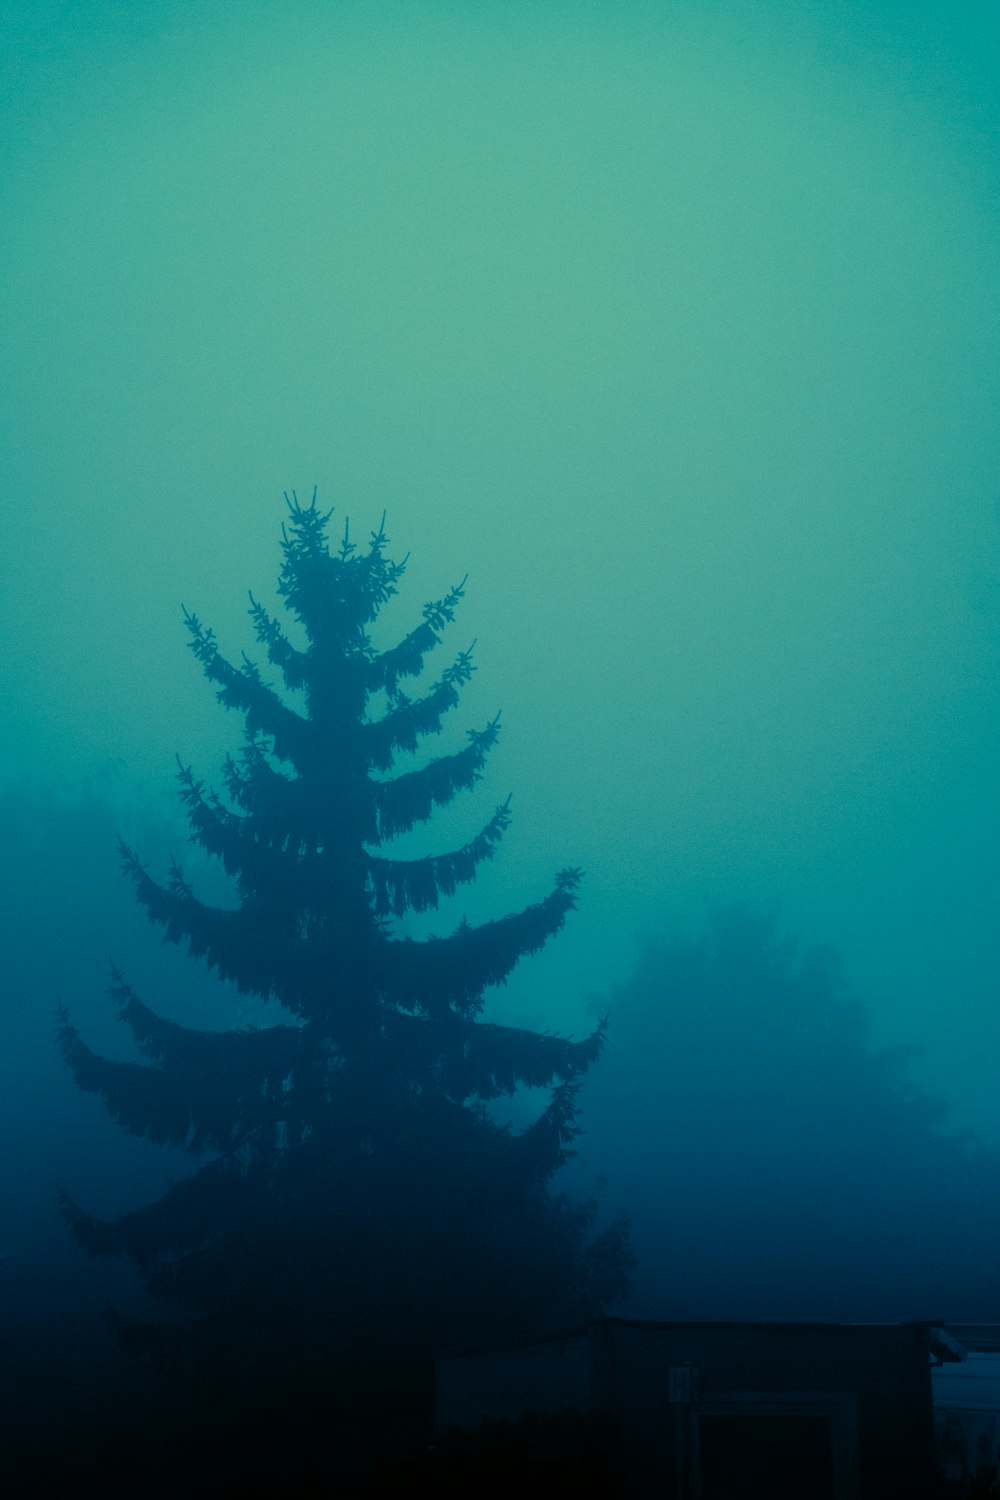 un alto pino seduto nel mezzo di una foresta nebbiosa